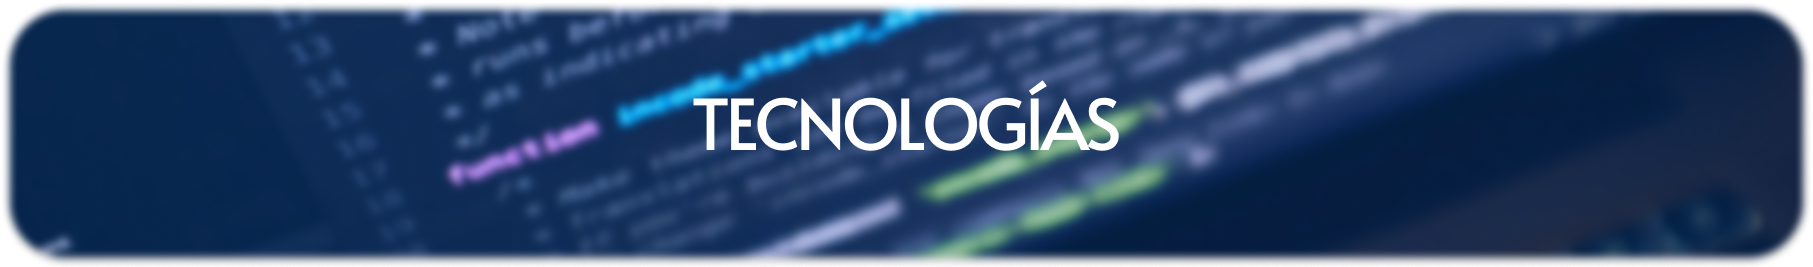 banner-tecnologias